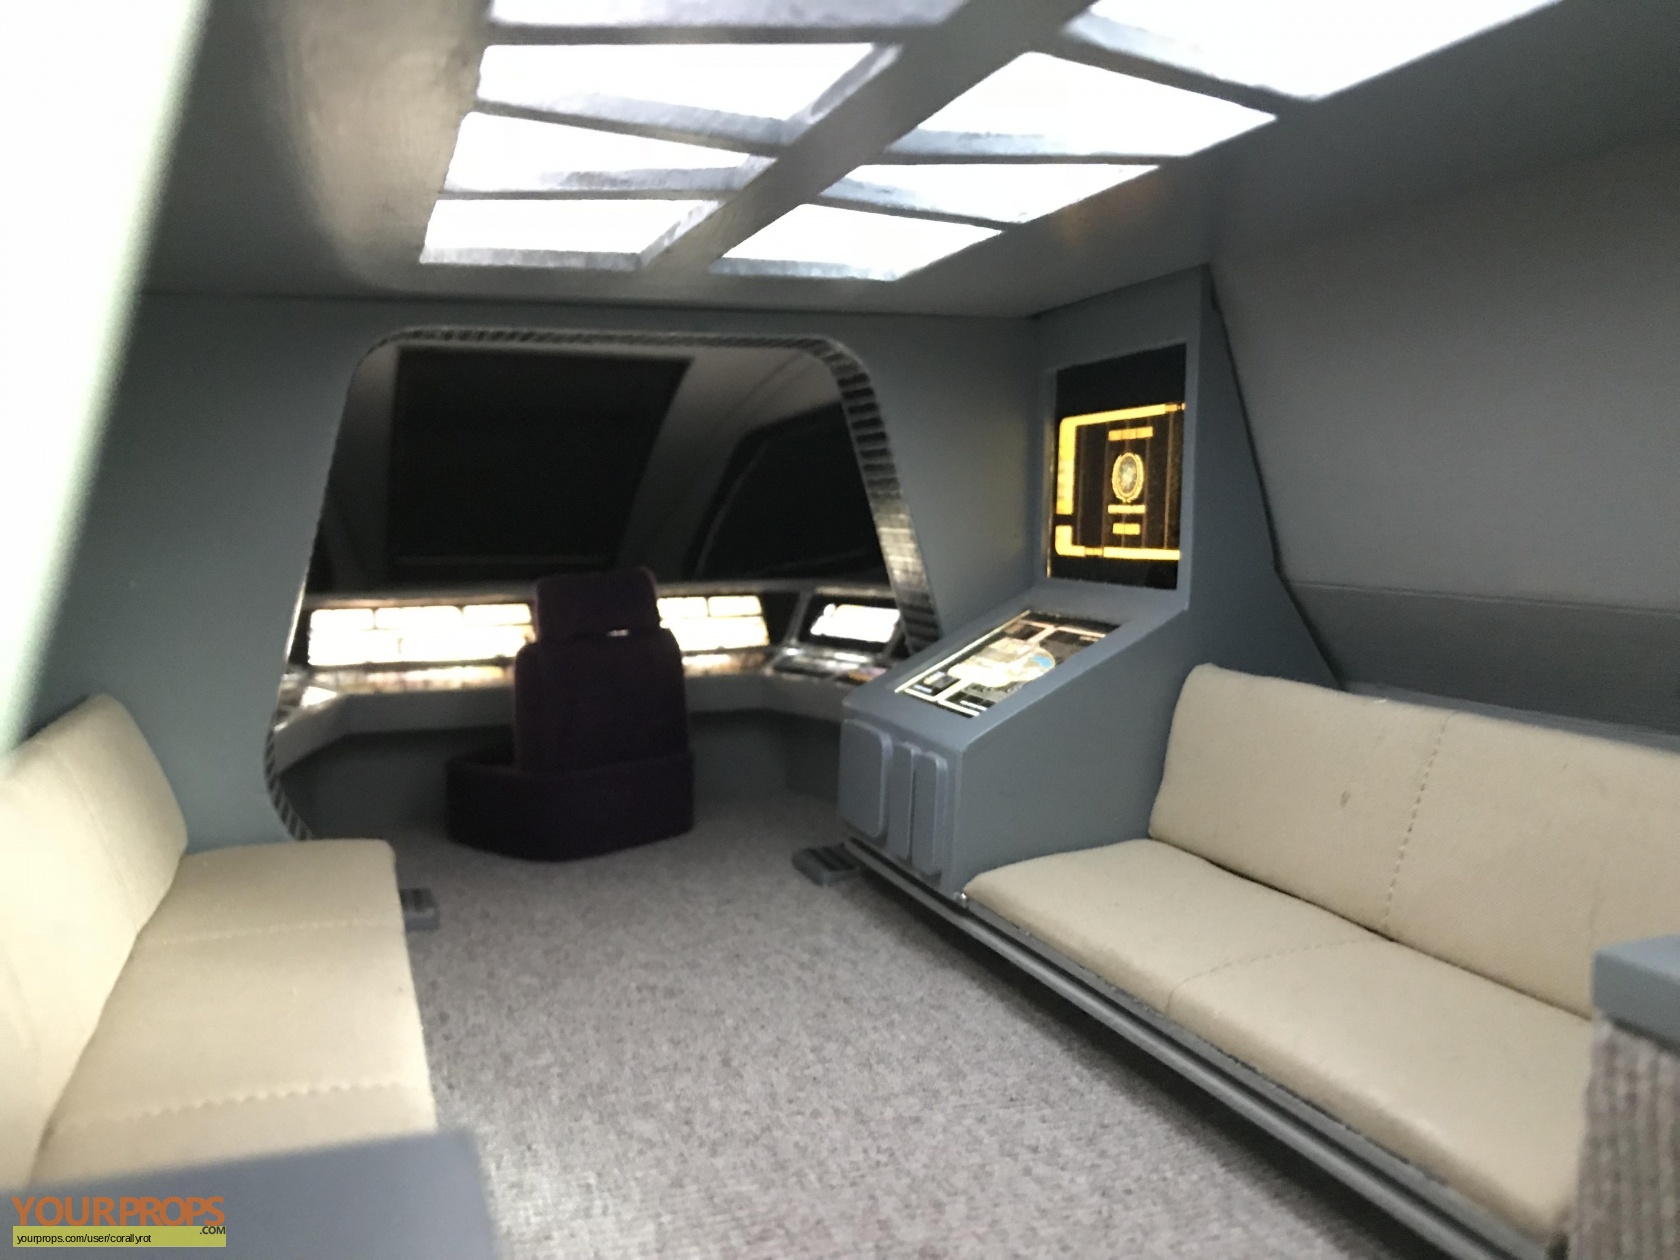 Star Trek The Next Generation Star Trek Relics Shuttle